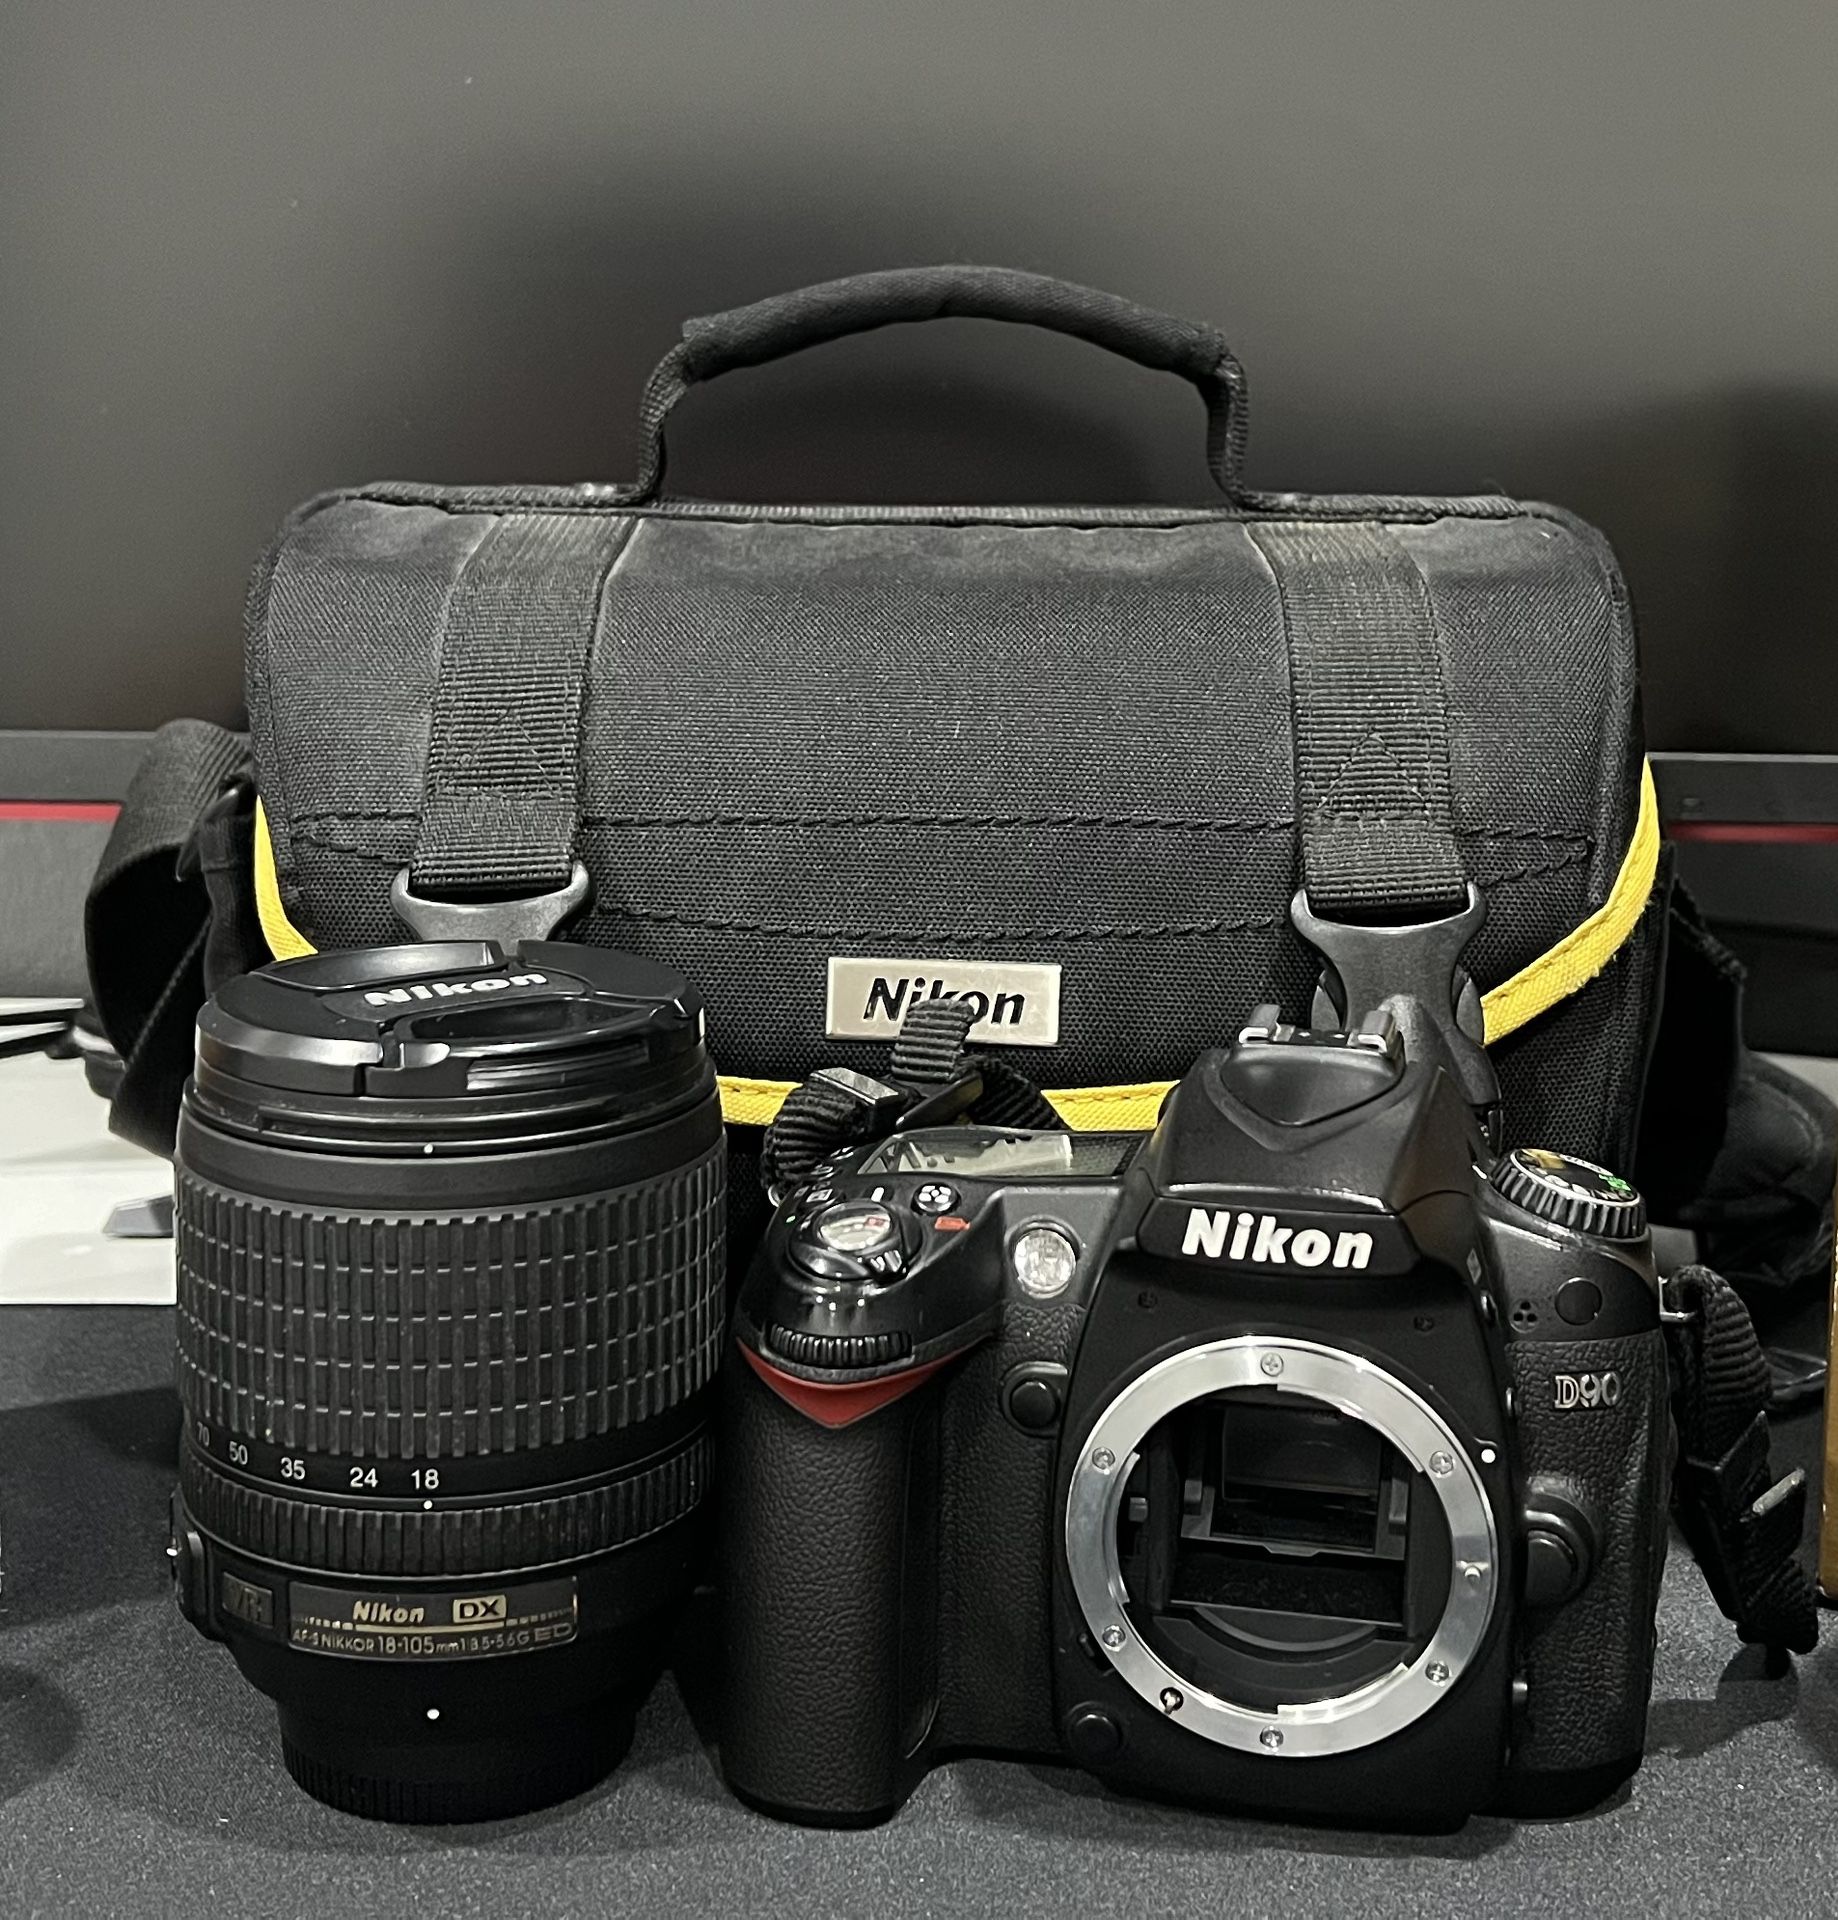 Nikon D90 + 18-105mm + Accessories Bag